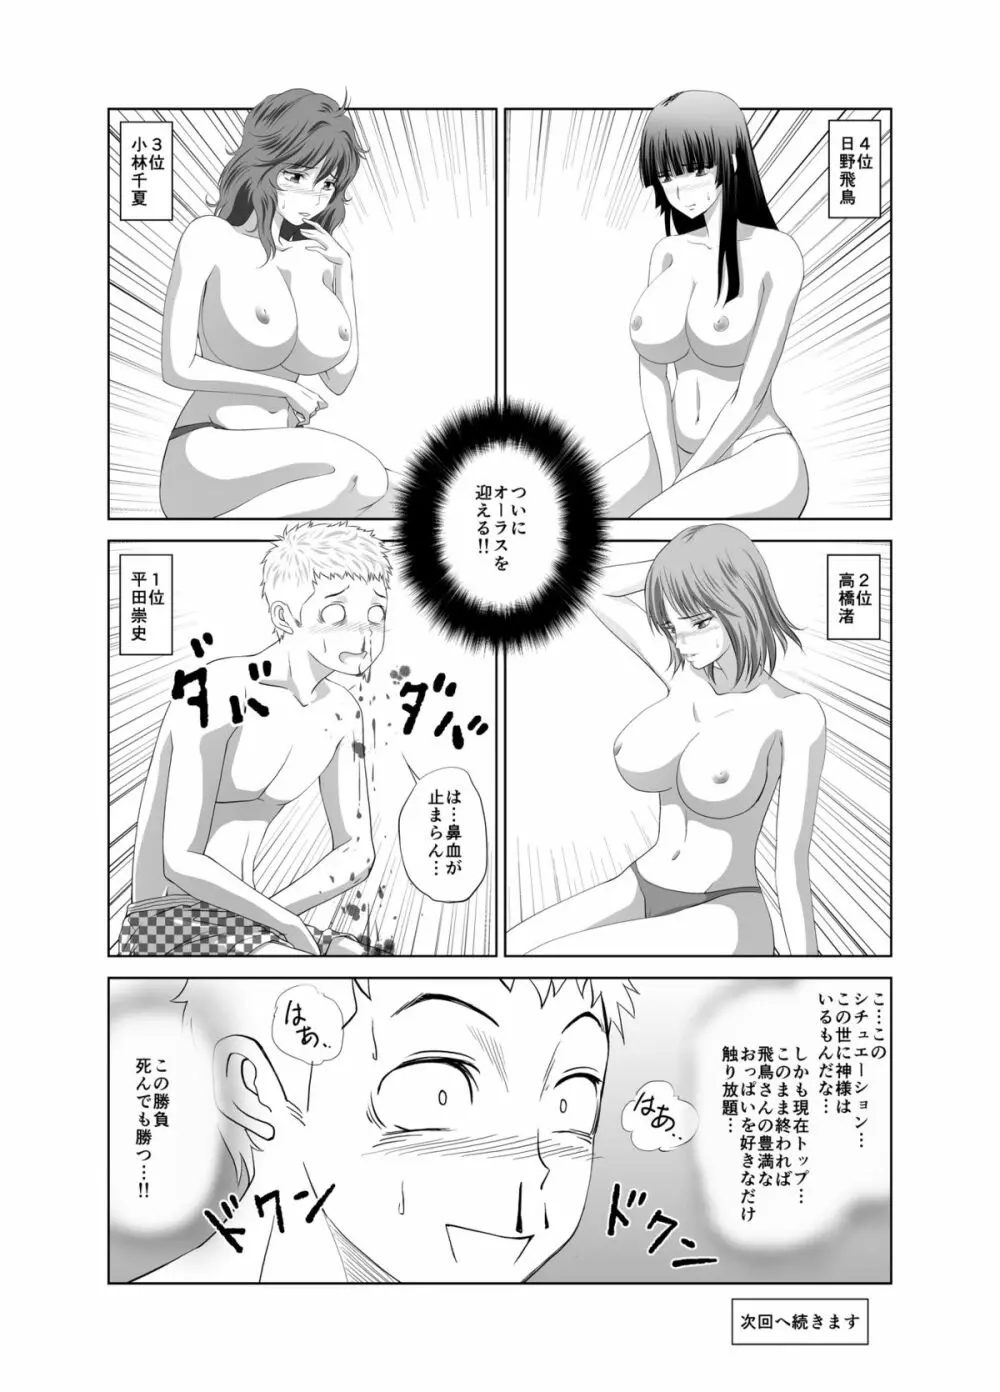 脱衣麻雀～漫画編～【完成版】 19ページ